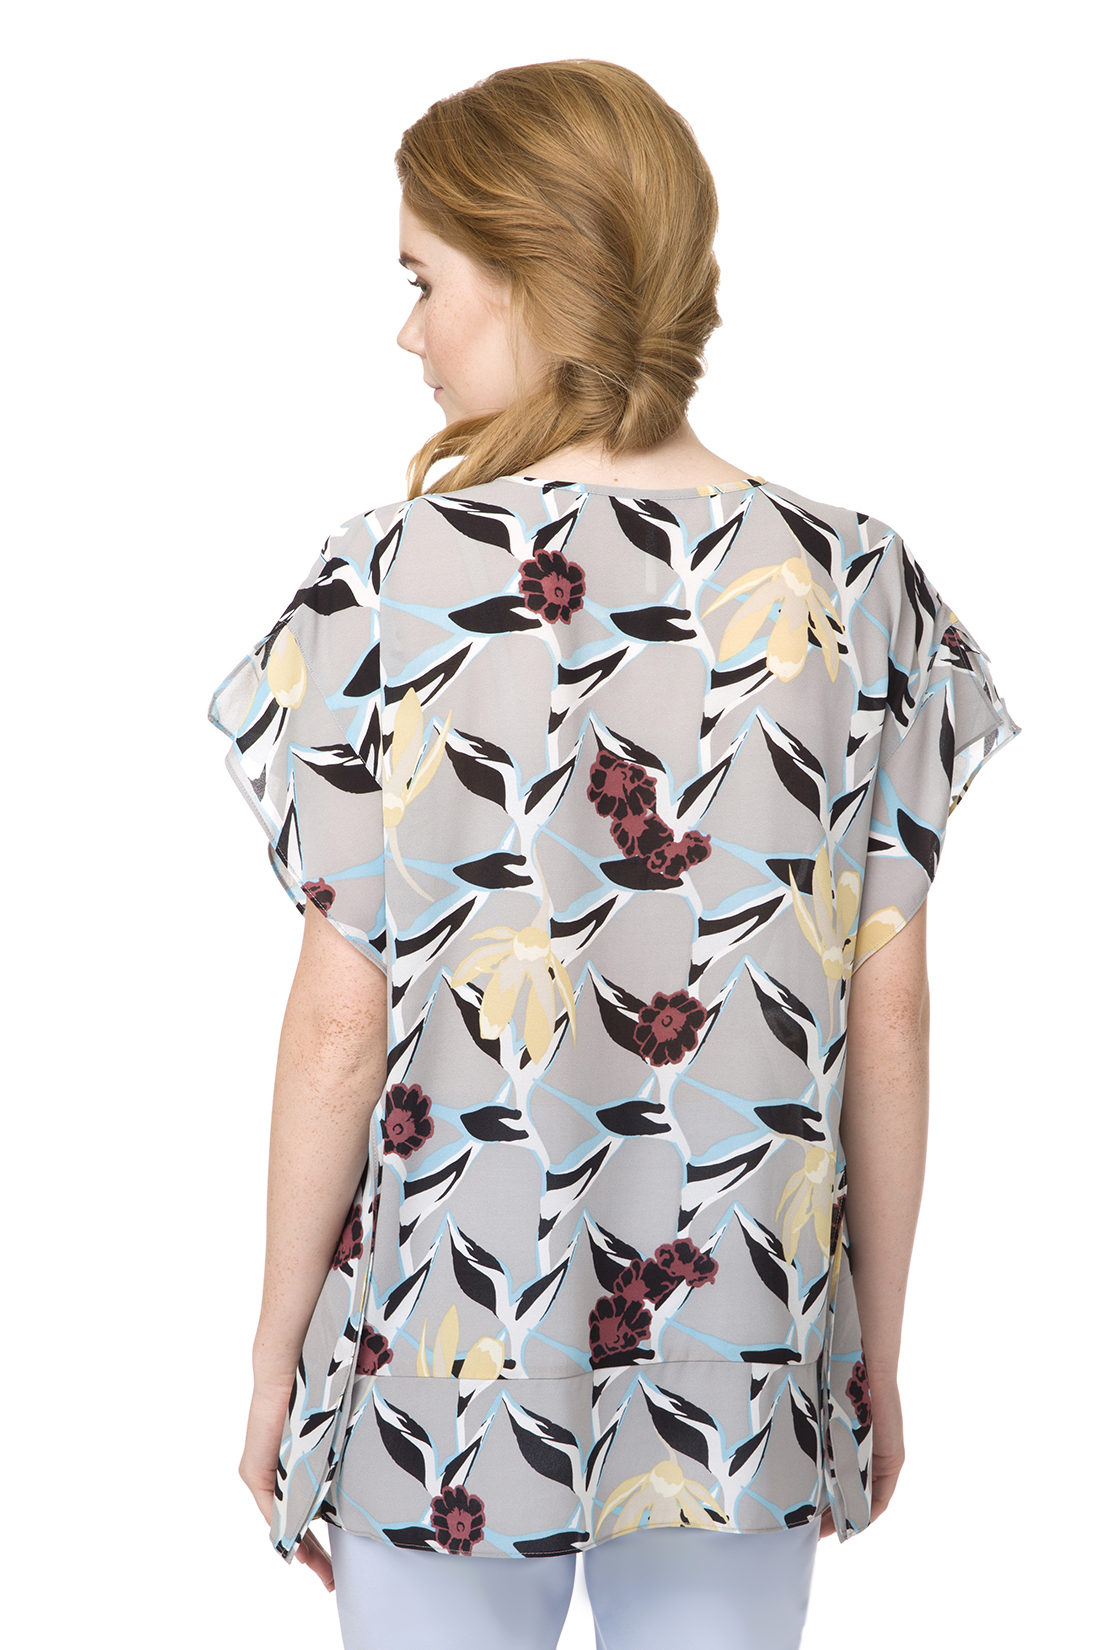 Блузка свободного кроя с цветочным узором (арт. baon B197002), размер XS Блузка свободного кроя с цветочным узором (арт. baon B197002) - фото 2